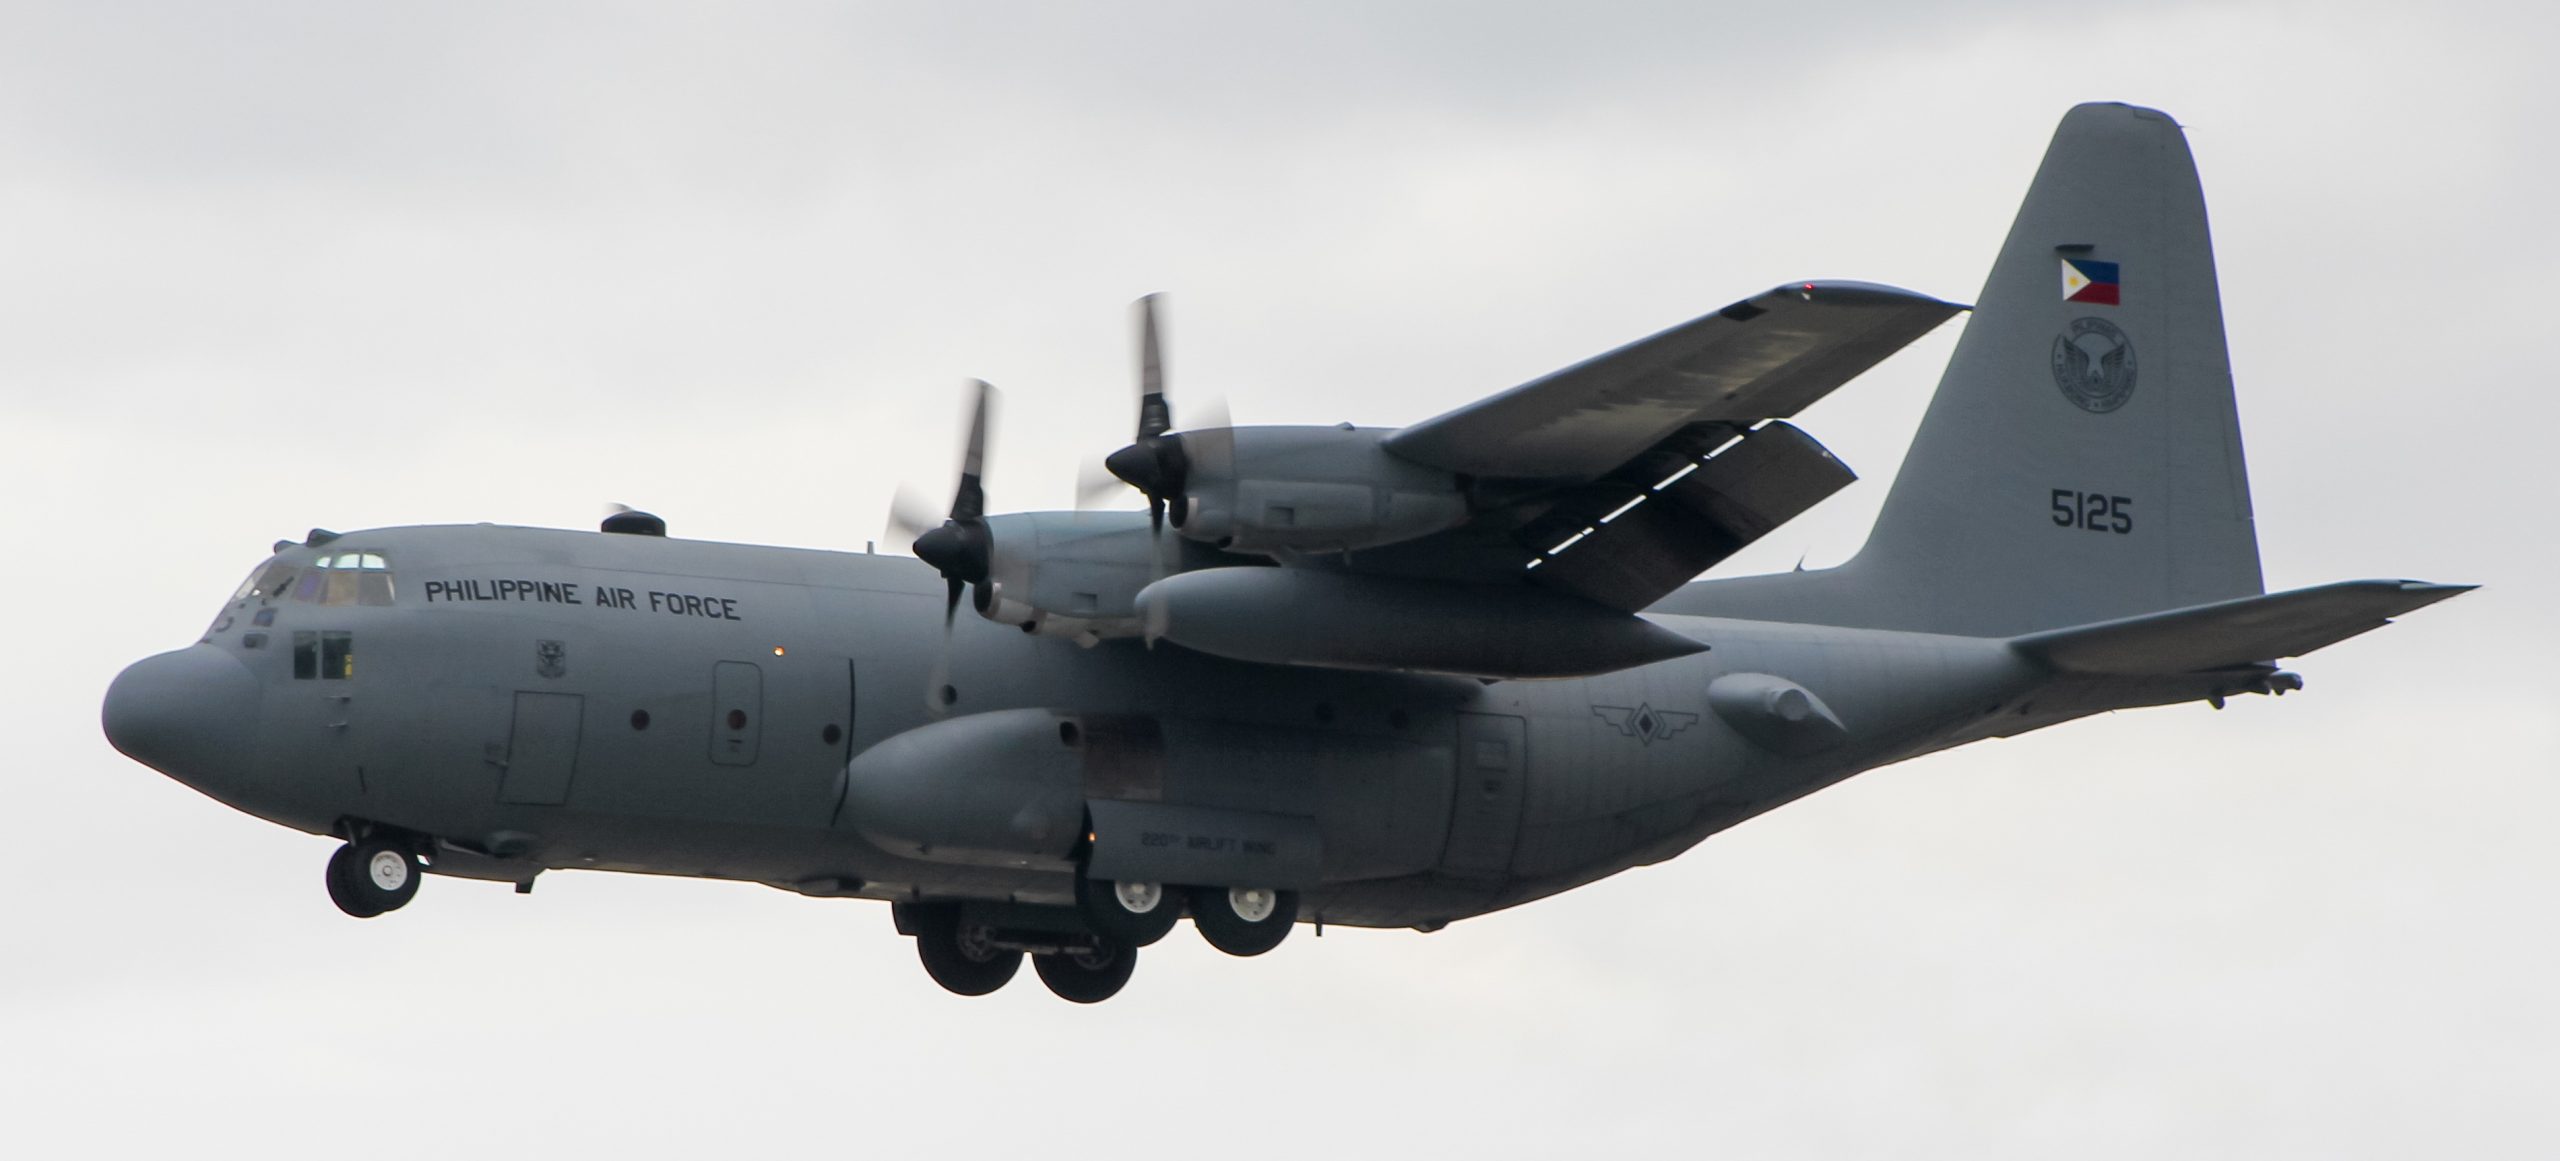 10 ár af C-130E Hercules flugvélinni í her Póllands, hluti 1